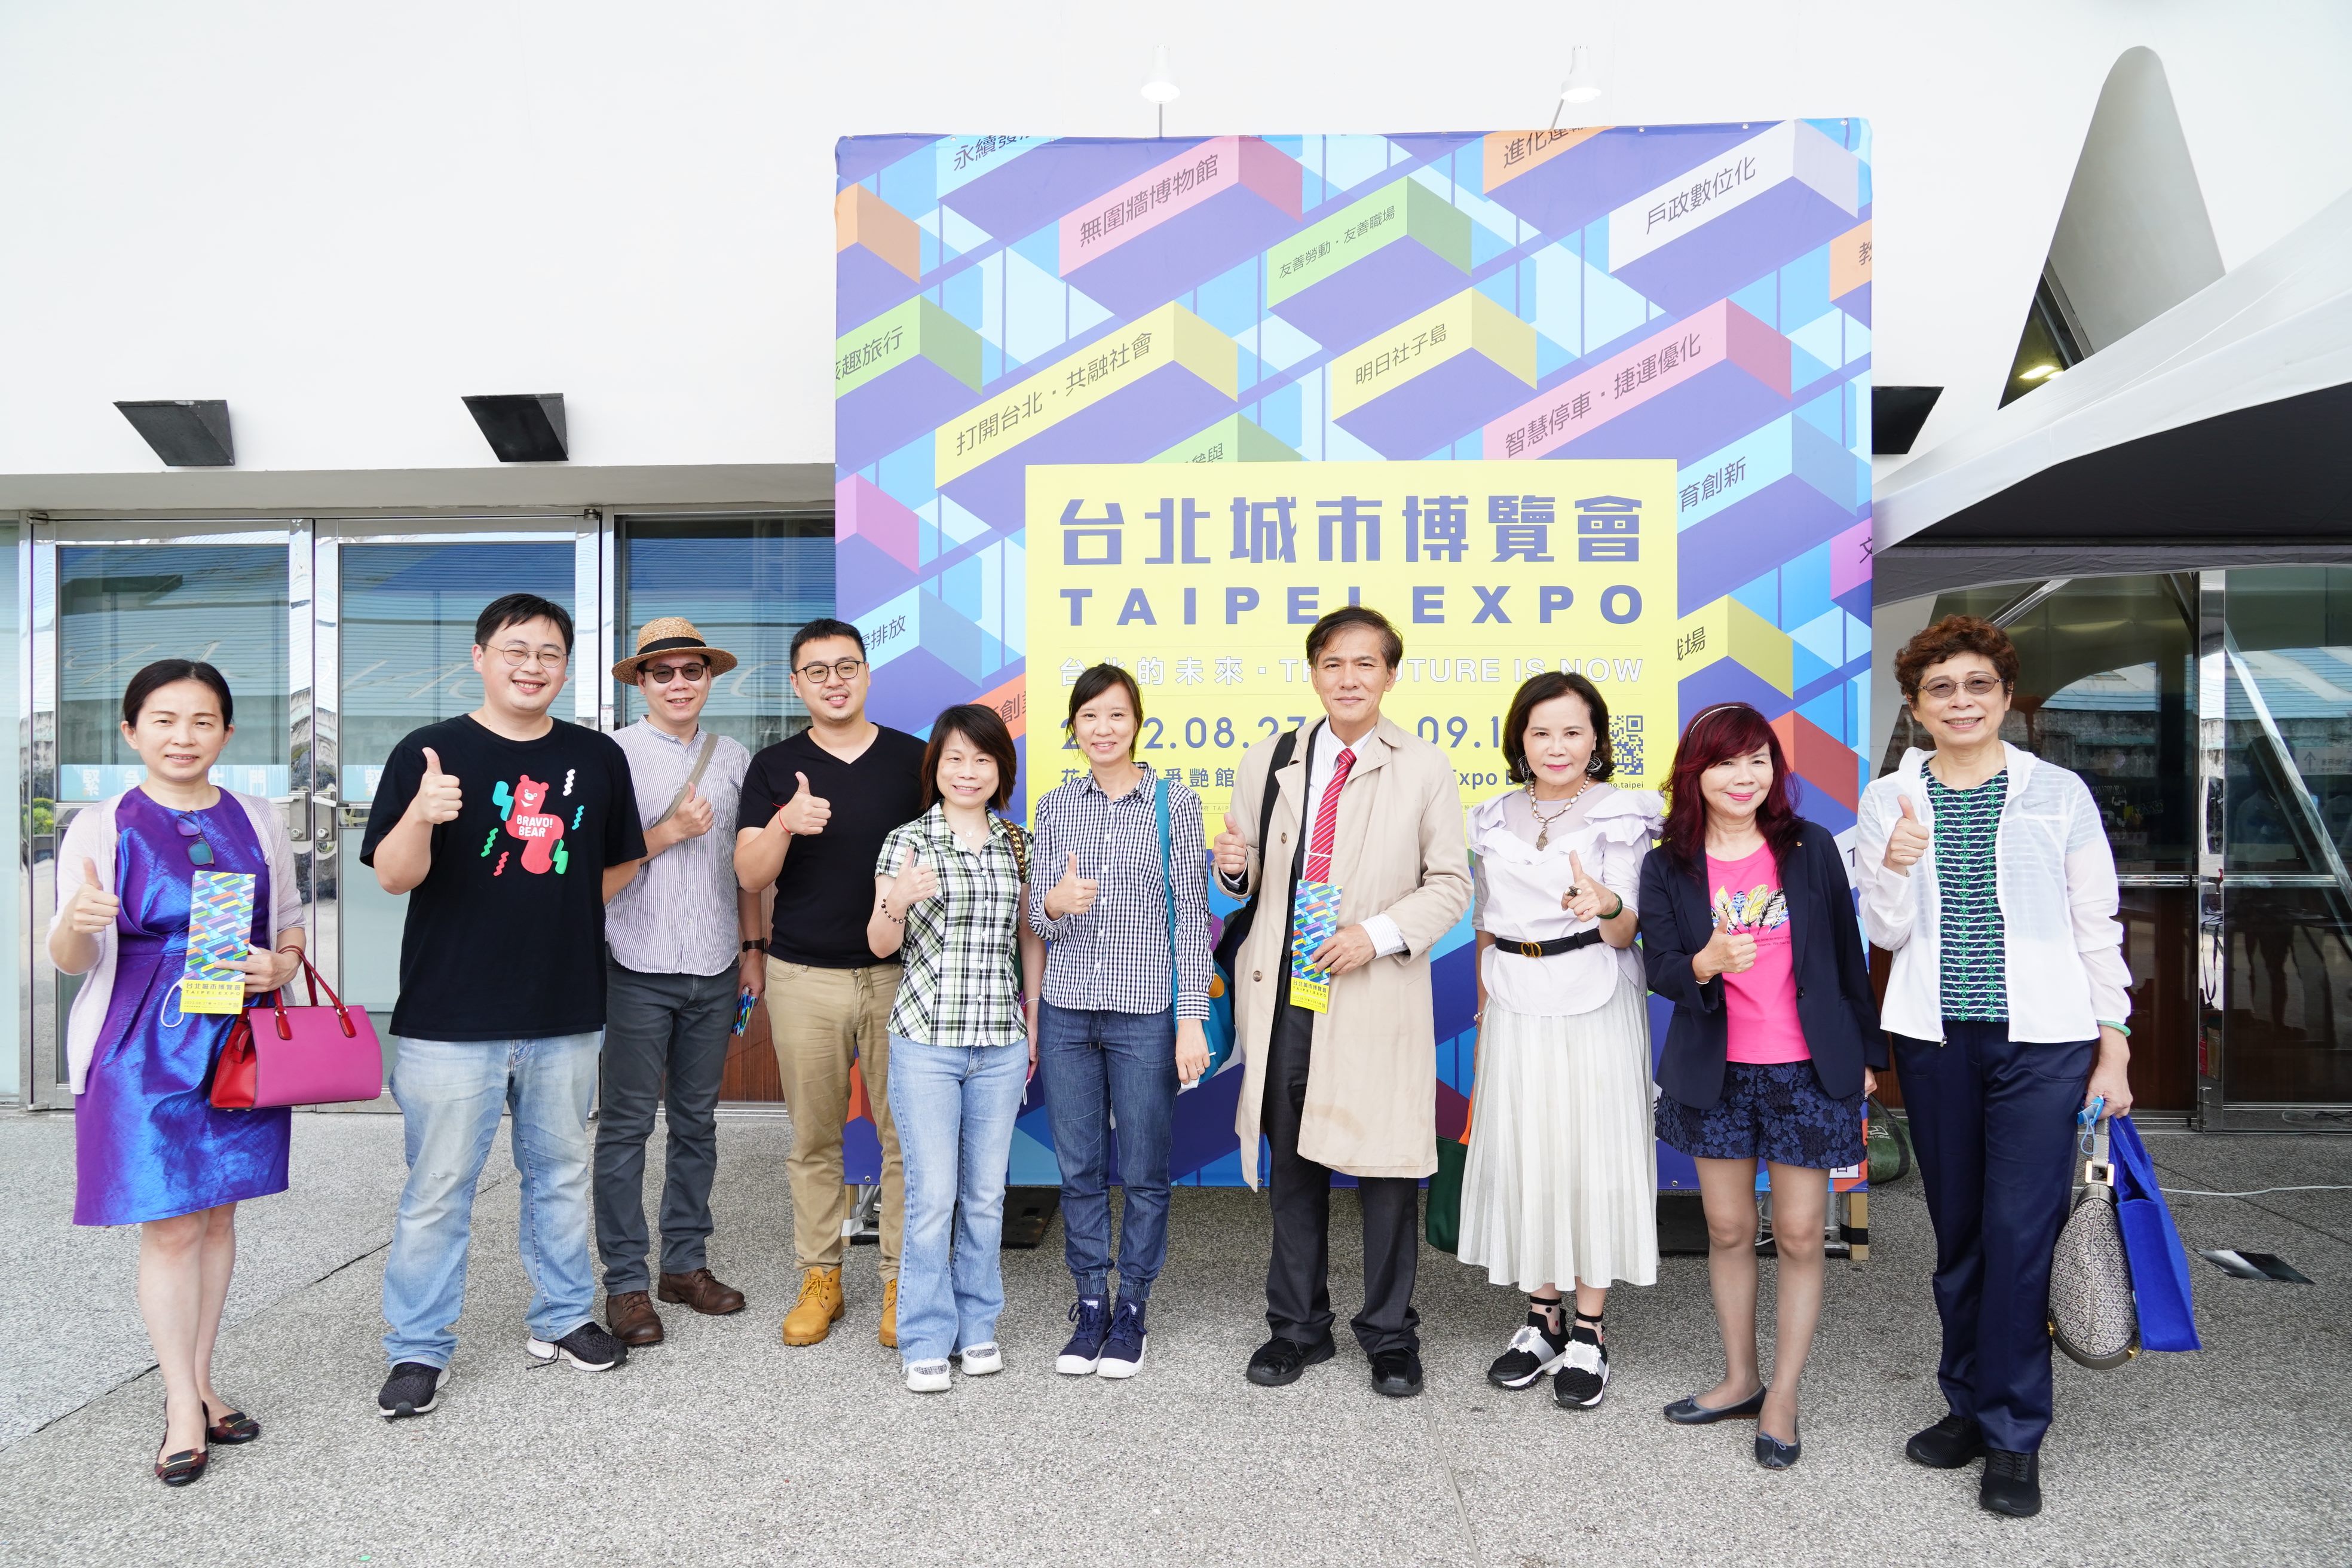 臺北市觀光委員於「2022台北城市博覽會」合影留念